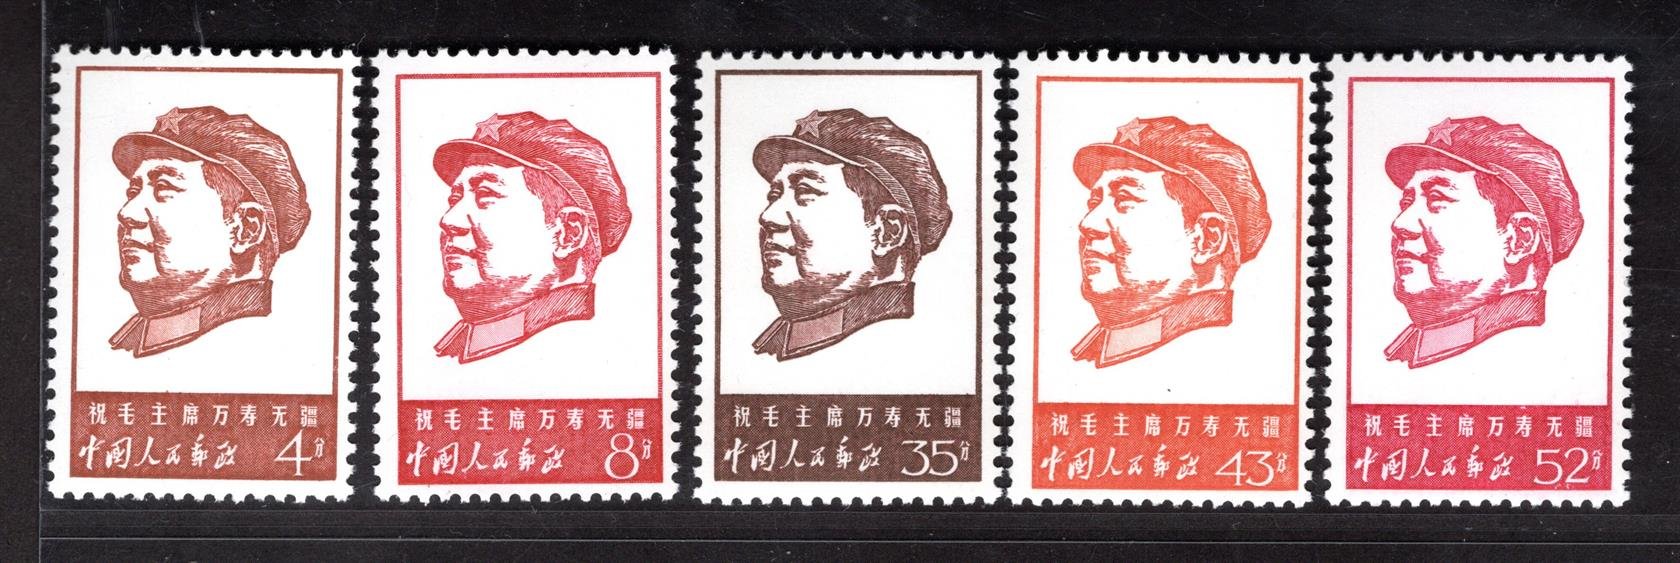 Čína - Mi. 985 - 9, Mao, výročí založení komunistické strany, kompletní řada